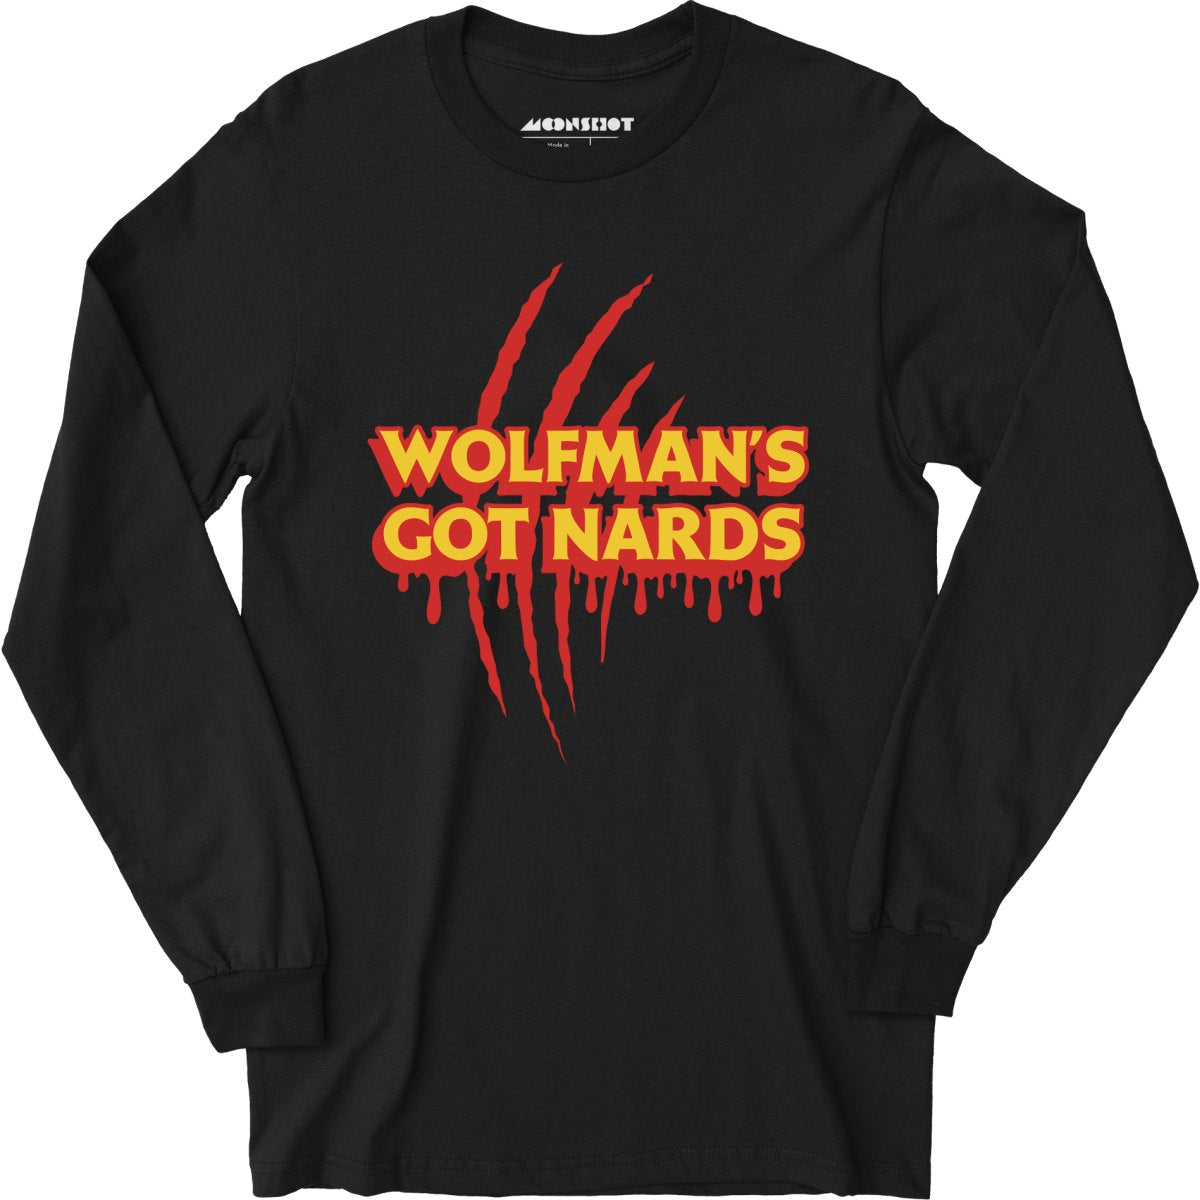 Wolfman's Got Nards - Long Sleeve T-Shirt